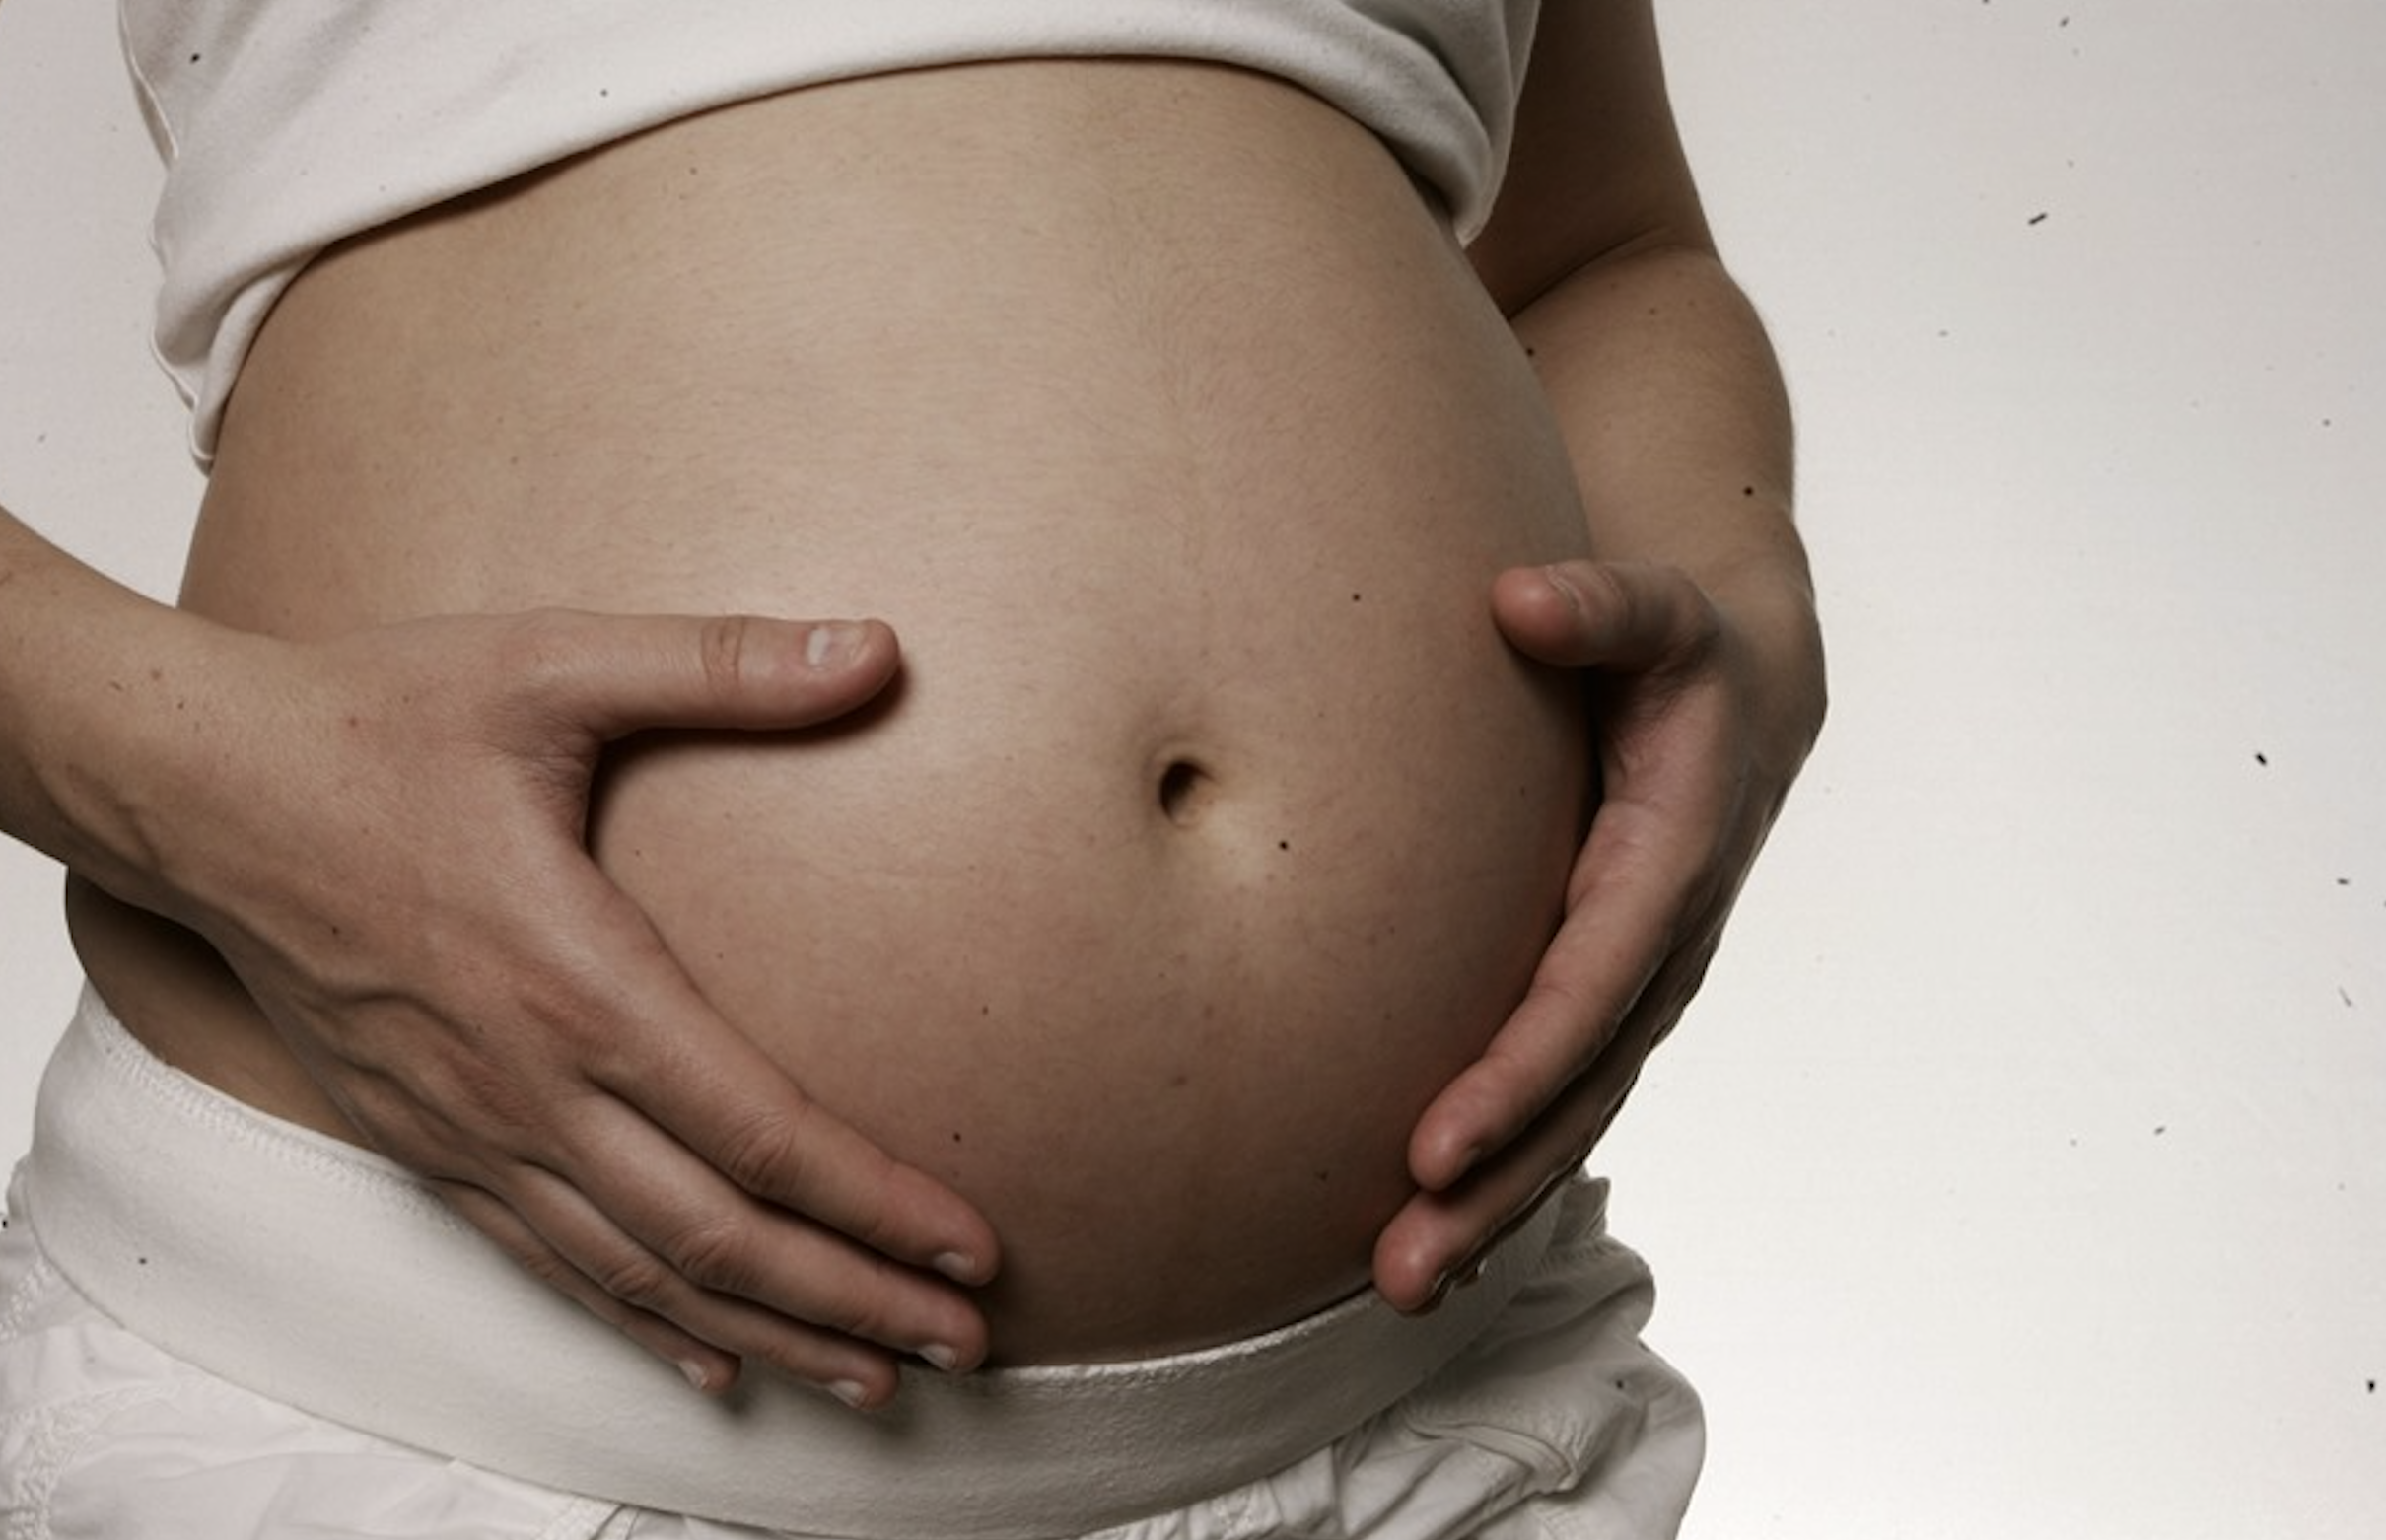 EU registra más de 64,000 embarazos por violación en estados con restricciones al aborto